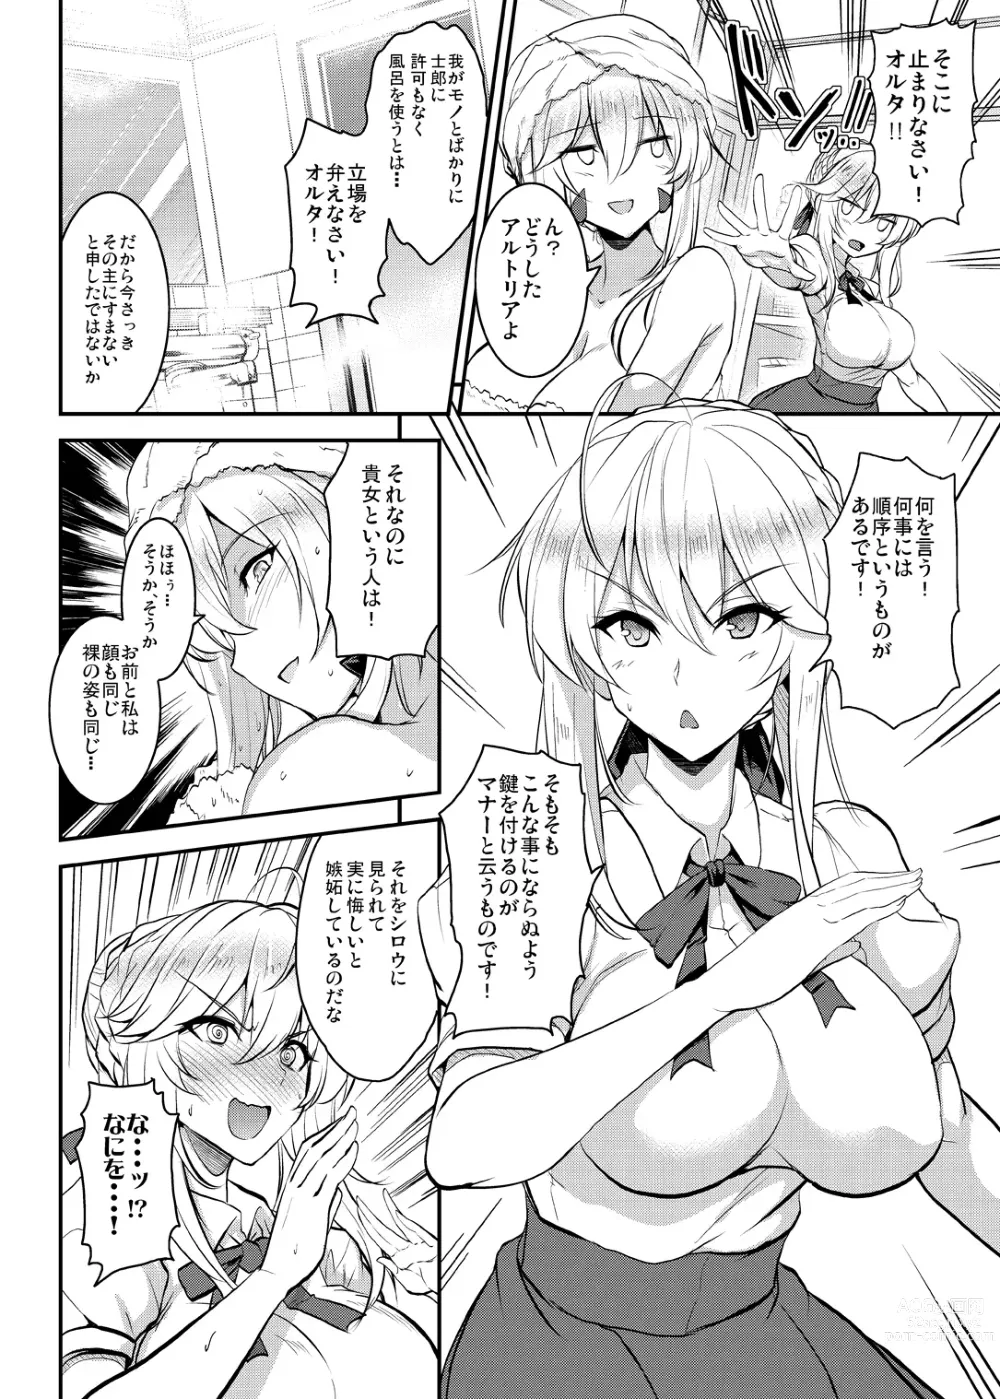 Page 24 of doujinshi Tonari no Chichiou-sama Memories Vol. 2